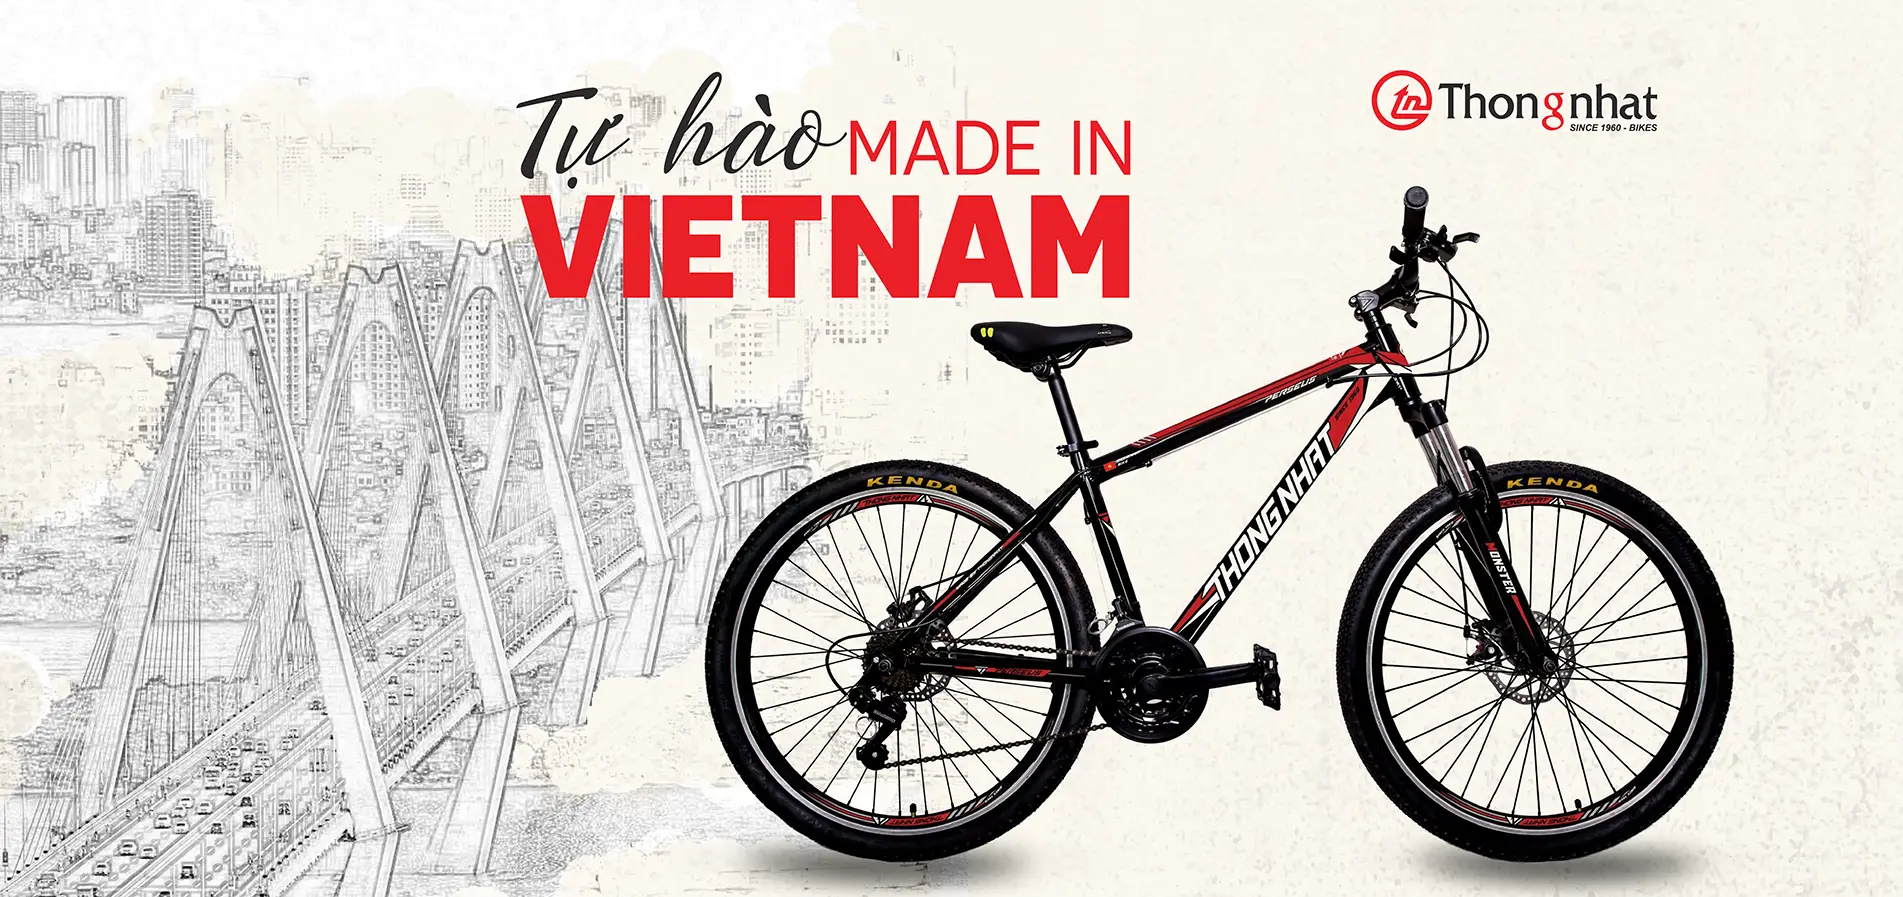 Xe đạp Thống Nhất: Những chiếc xe đạp Thống Nhất là niềm tự hào của người Việt Nam. Với thiết kế cổ điển đặc trưng và chất lượng đáng tin cậy, chúng đã trở thành biểu tượng của sự đoàn kết và sự phát triển của quốc gia. Bạn không nên bỏ qua cơ hội để chiêm ngưỡng những chiếc xe đạp huyền thoại này.